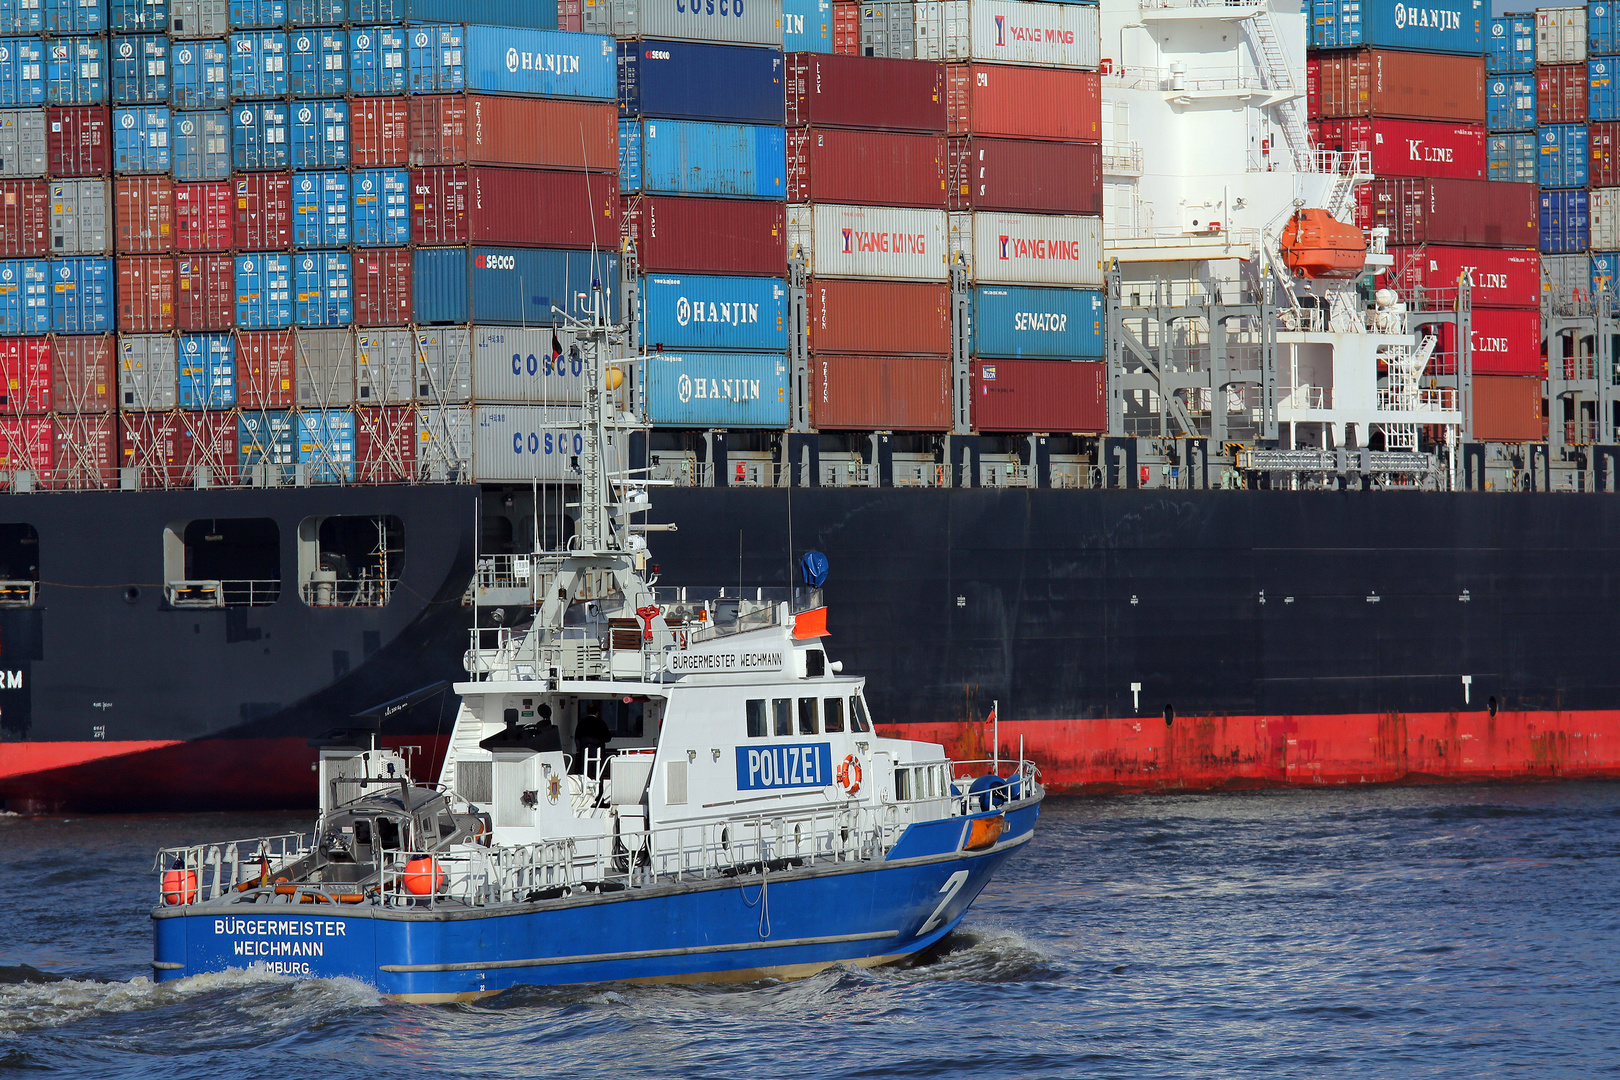 Bürgermeister Weichmann passiert Containerschiff YM Uniform auf der Elbe